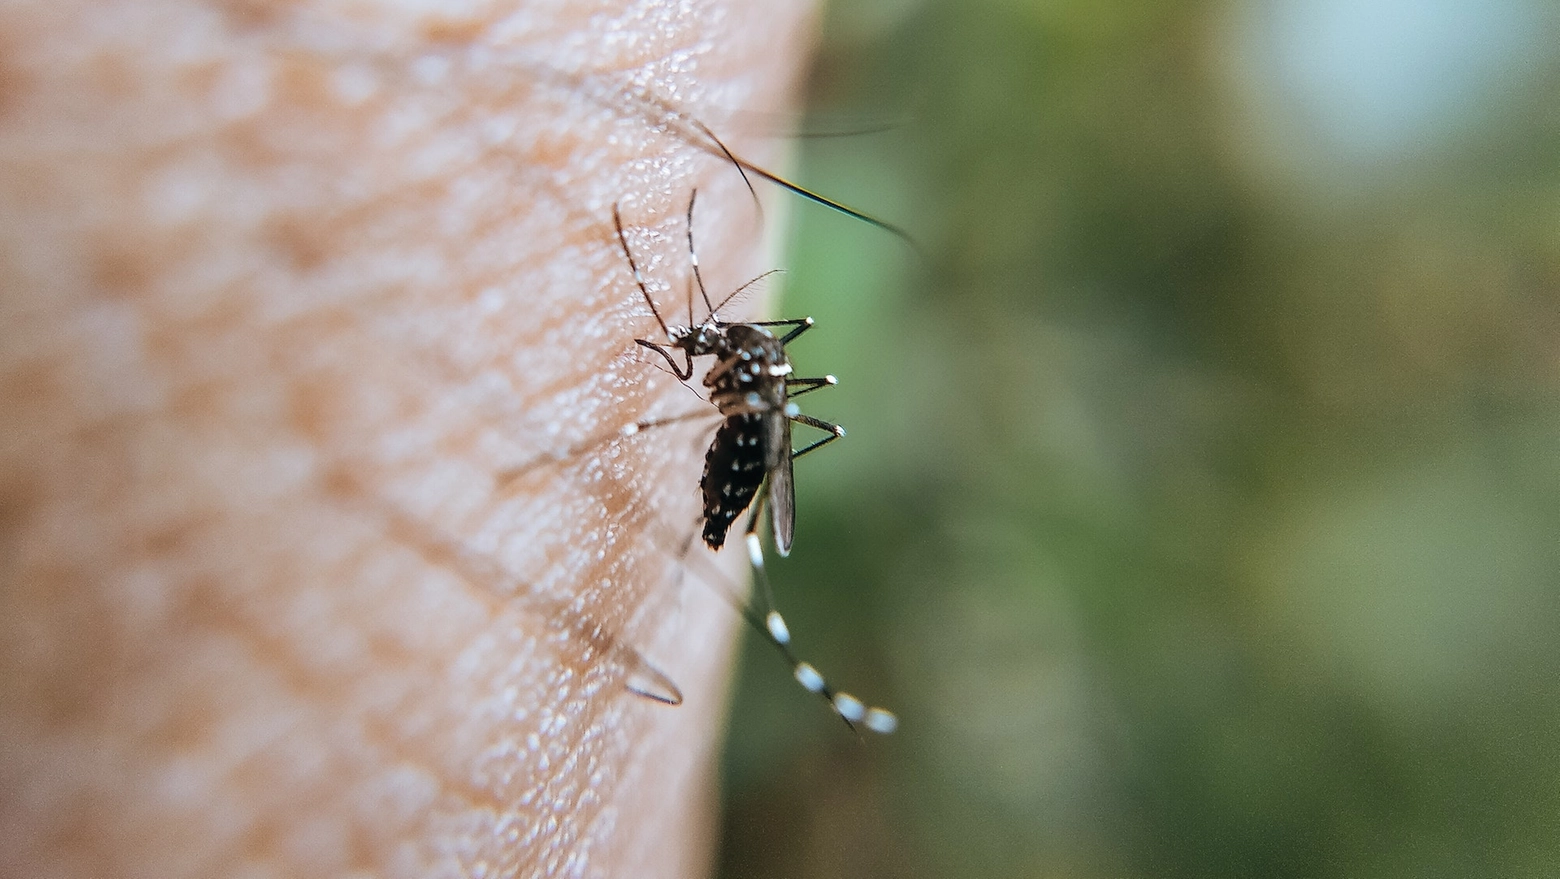 La modalità principale di trasmissione del virus del Nilo occidentale è rappresentata dalle zanzare, che sono il primo vettore